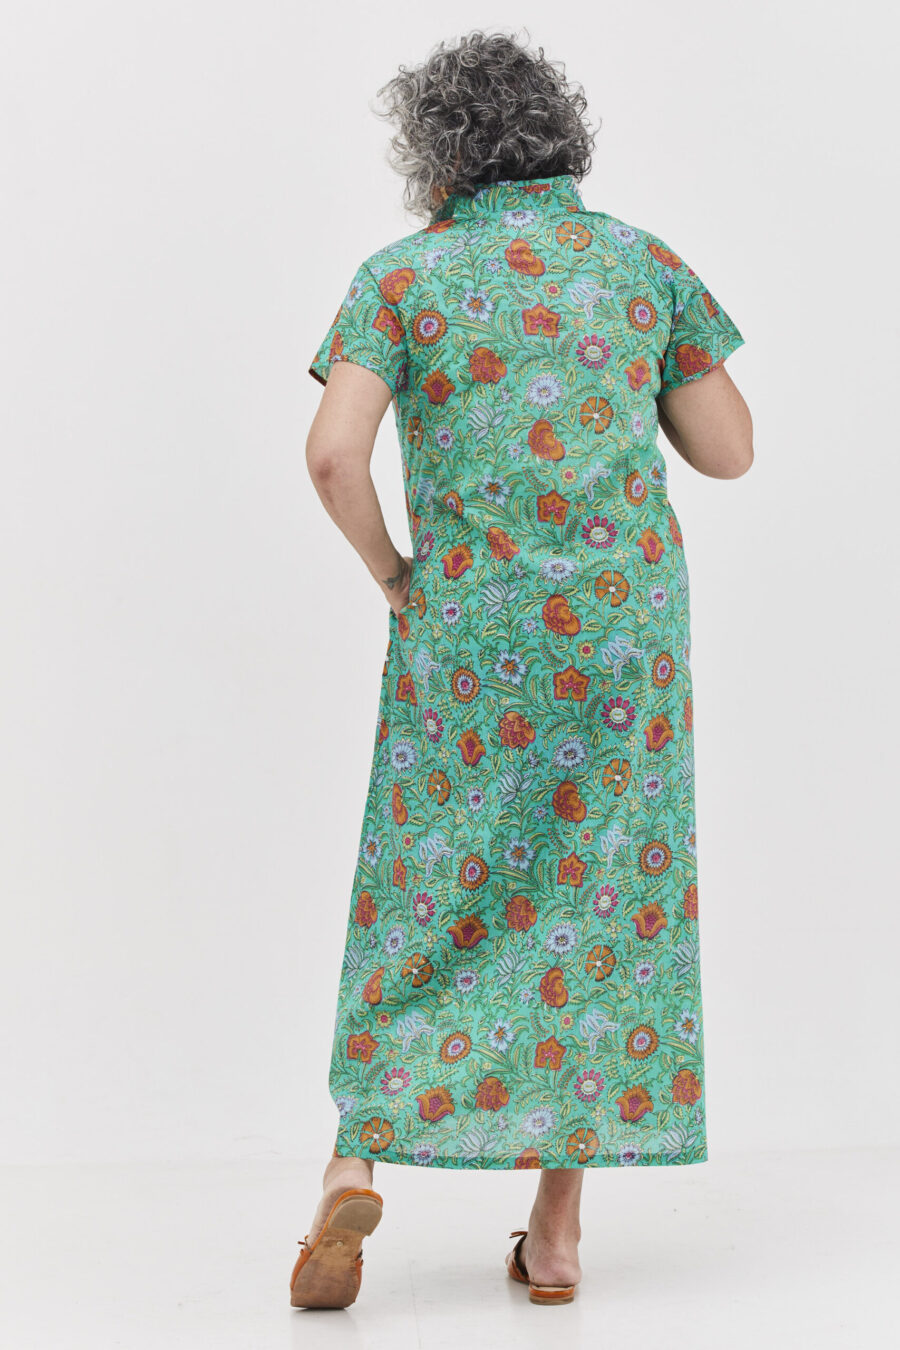 שמלת מאיקו | שמלה יפנית בעלת מפתח בעיצוב ייחודי – פרינט סימפוני, שמלה בצבע טורקיז ירקרק עם הדפס פרחוני צבעוני.